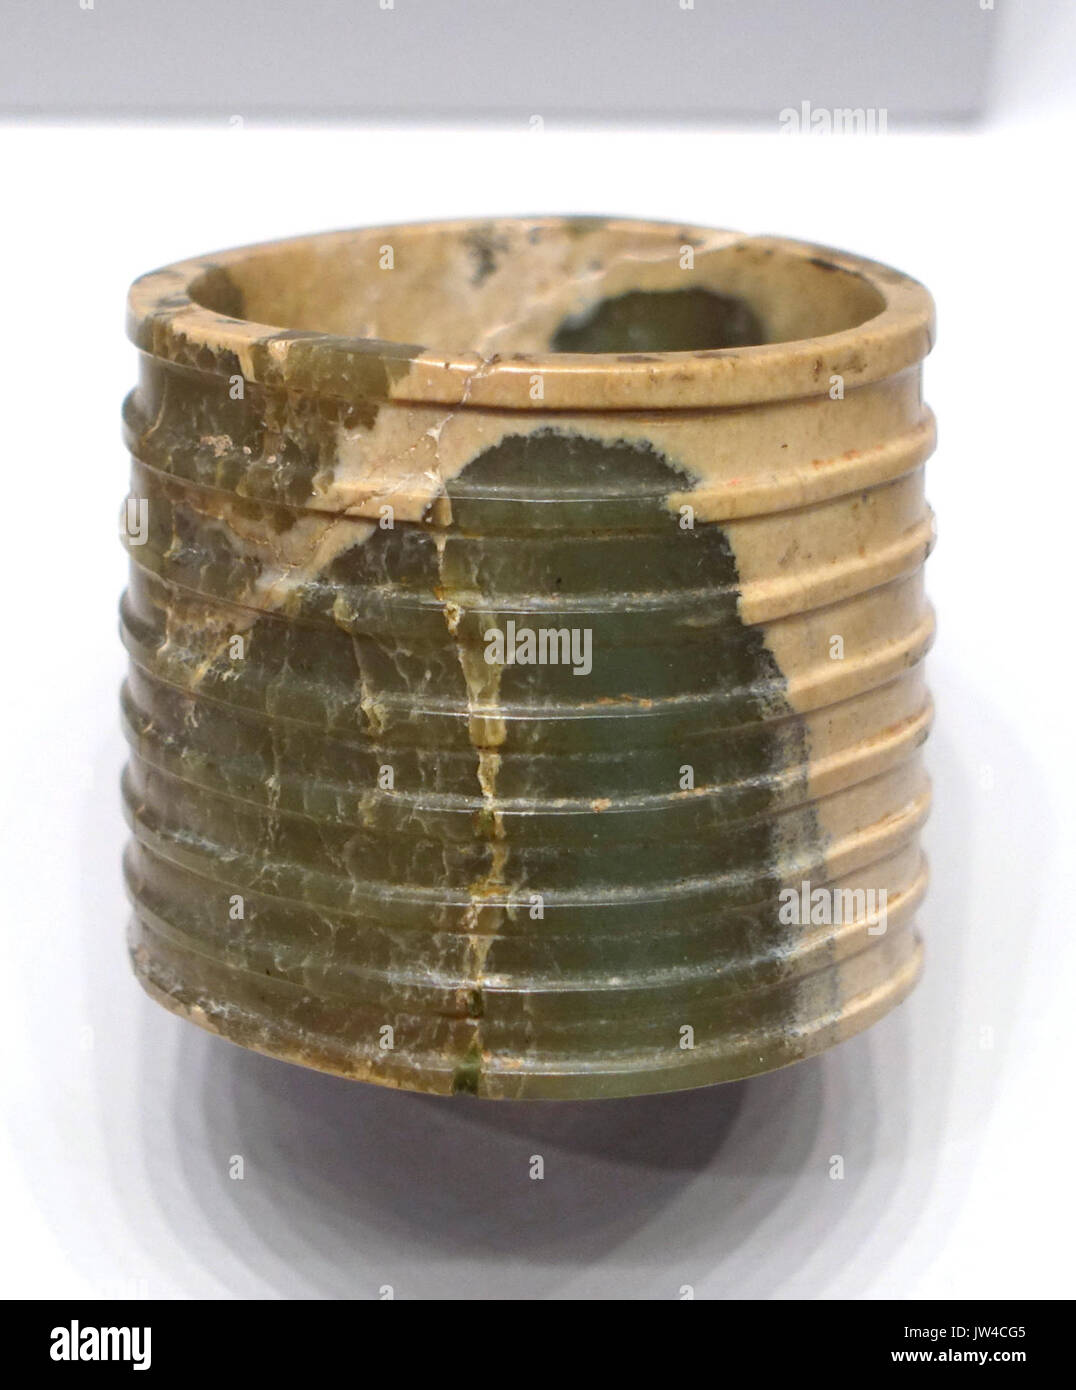 Bague cannelée, Chine, probablement la province de Shandong, néolithique, la culture de Longshan, 2500 2000 BC, la néphrite Arthur M Sackler Museum, Harvard University DSC00800 Banque D'Images